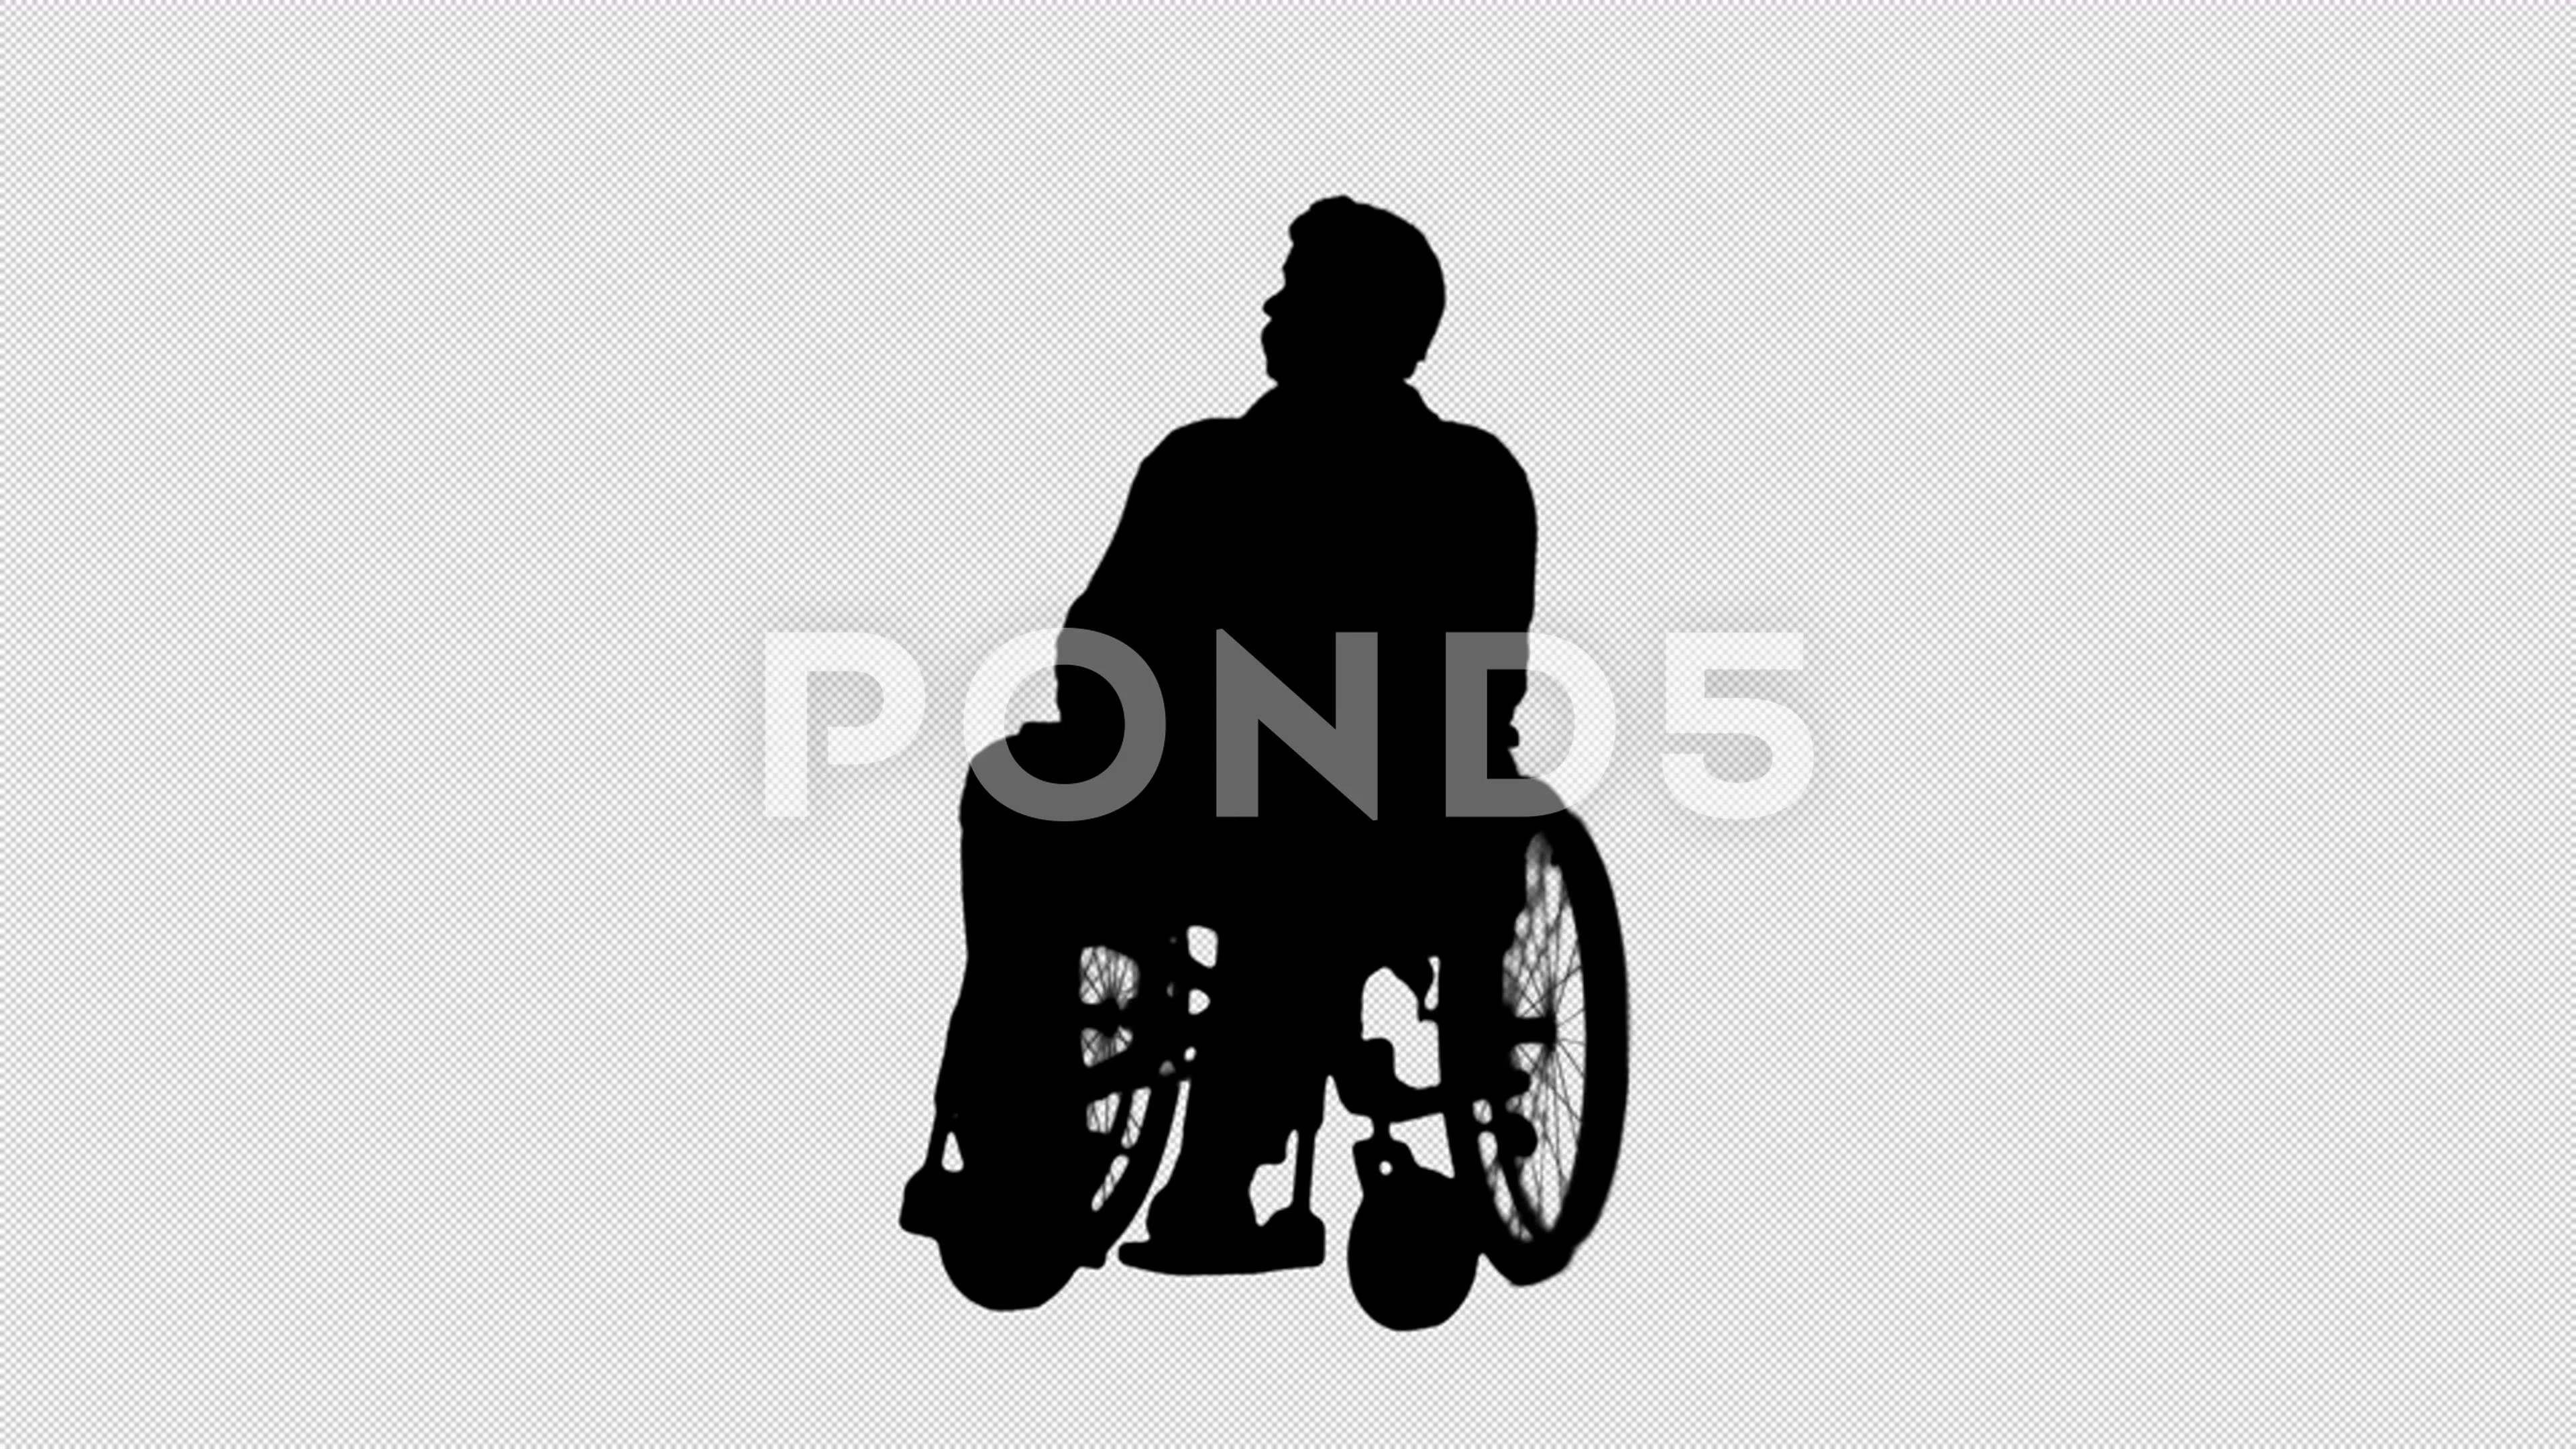 wheelchair silhouette